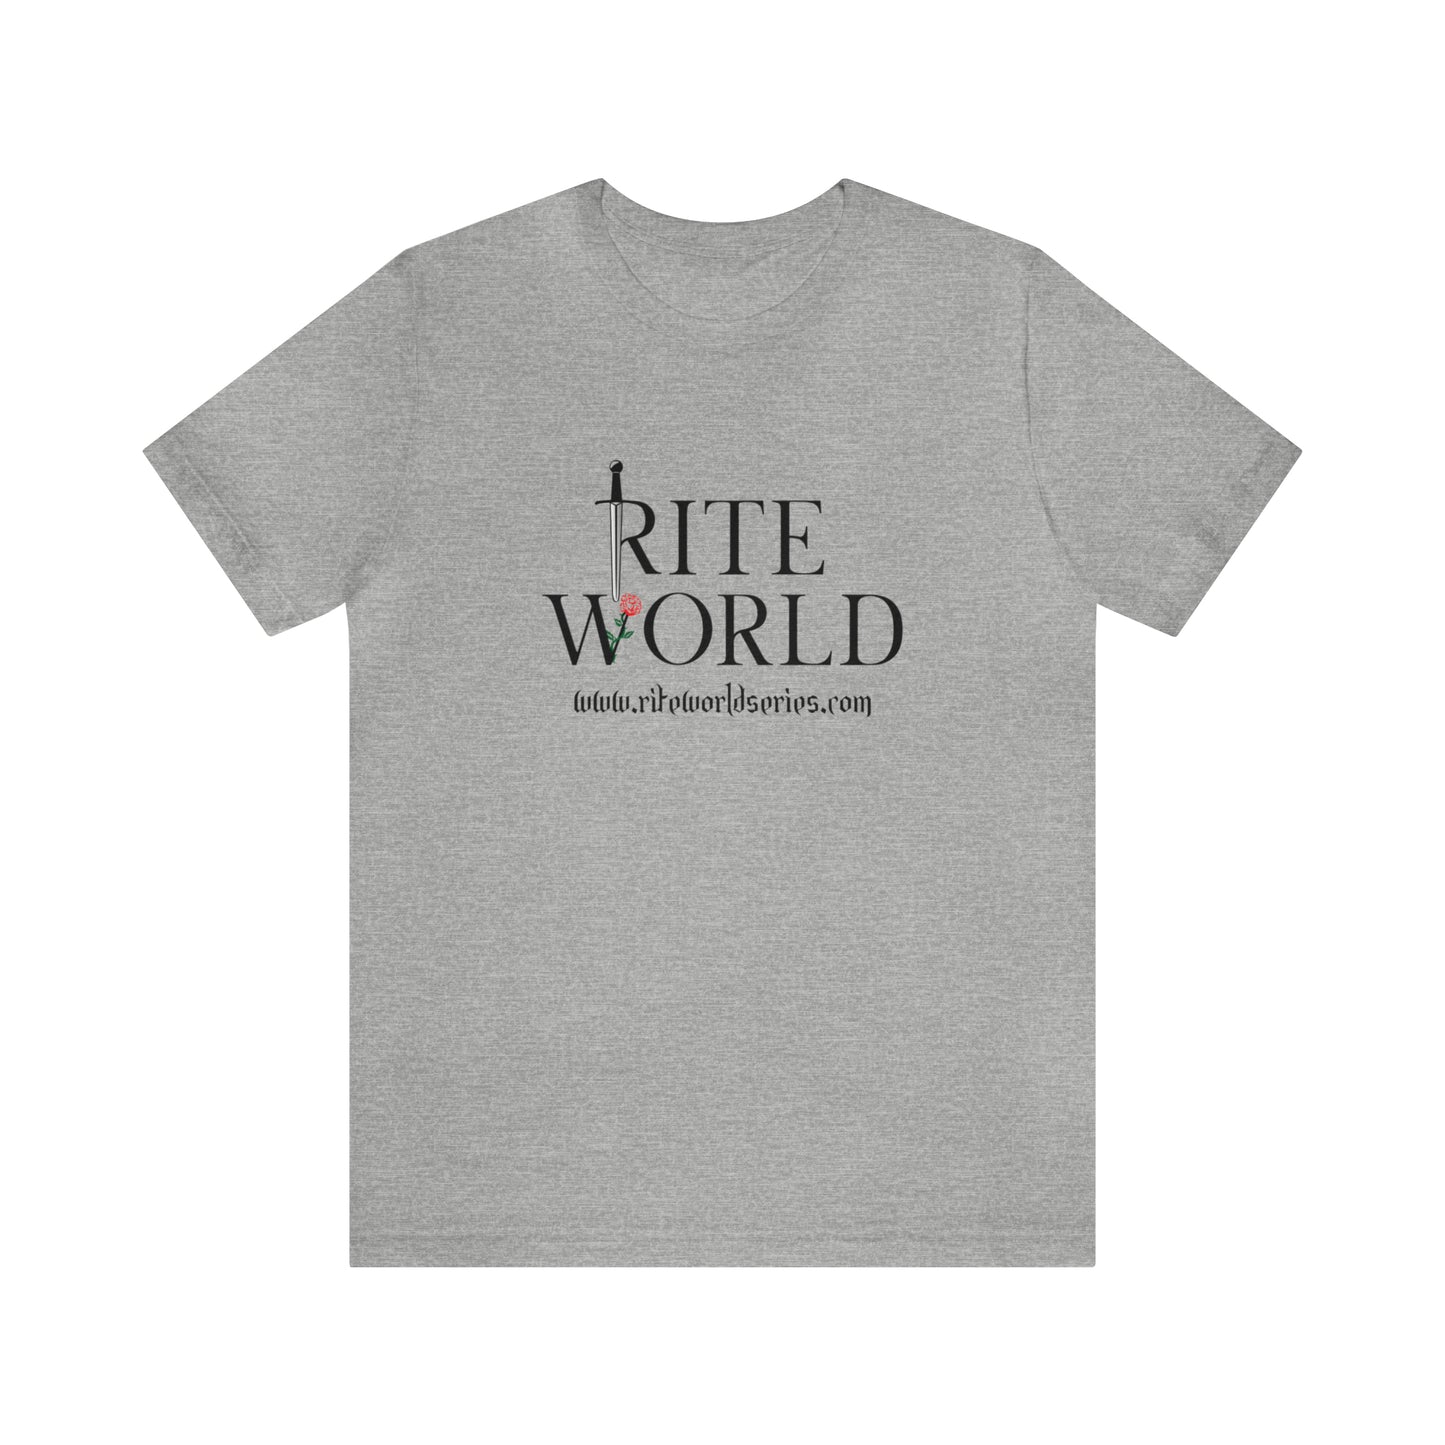 Rite World Shirt